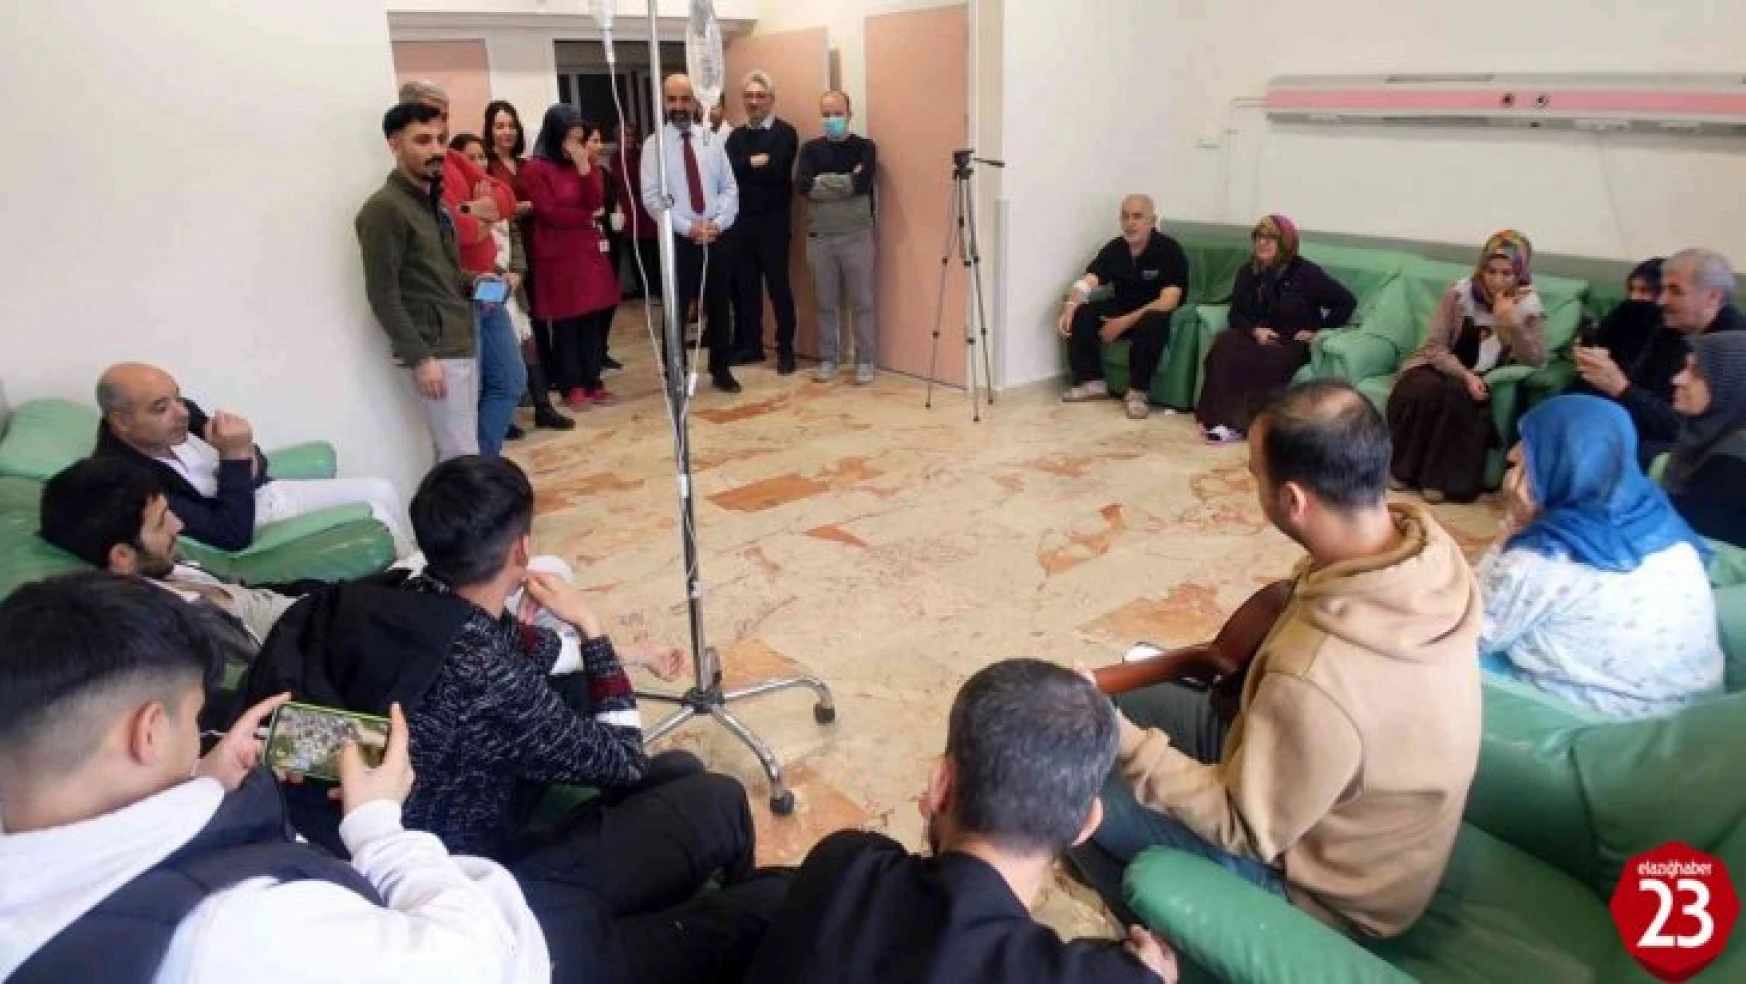 Elazığ'da hastalara müzik dinletisi